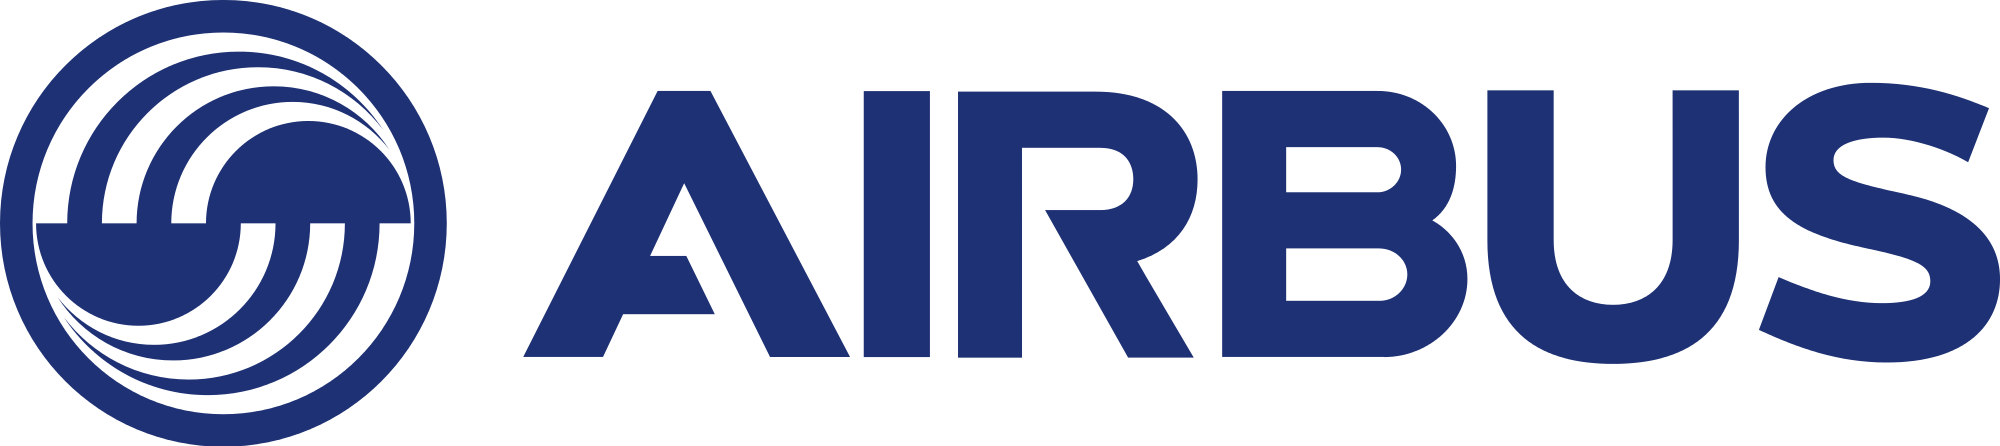 Resultado de imagen para Airbus logo